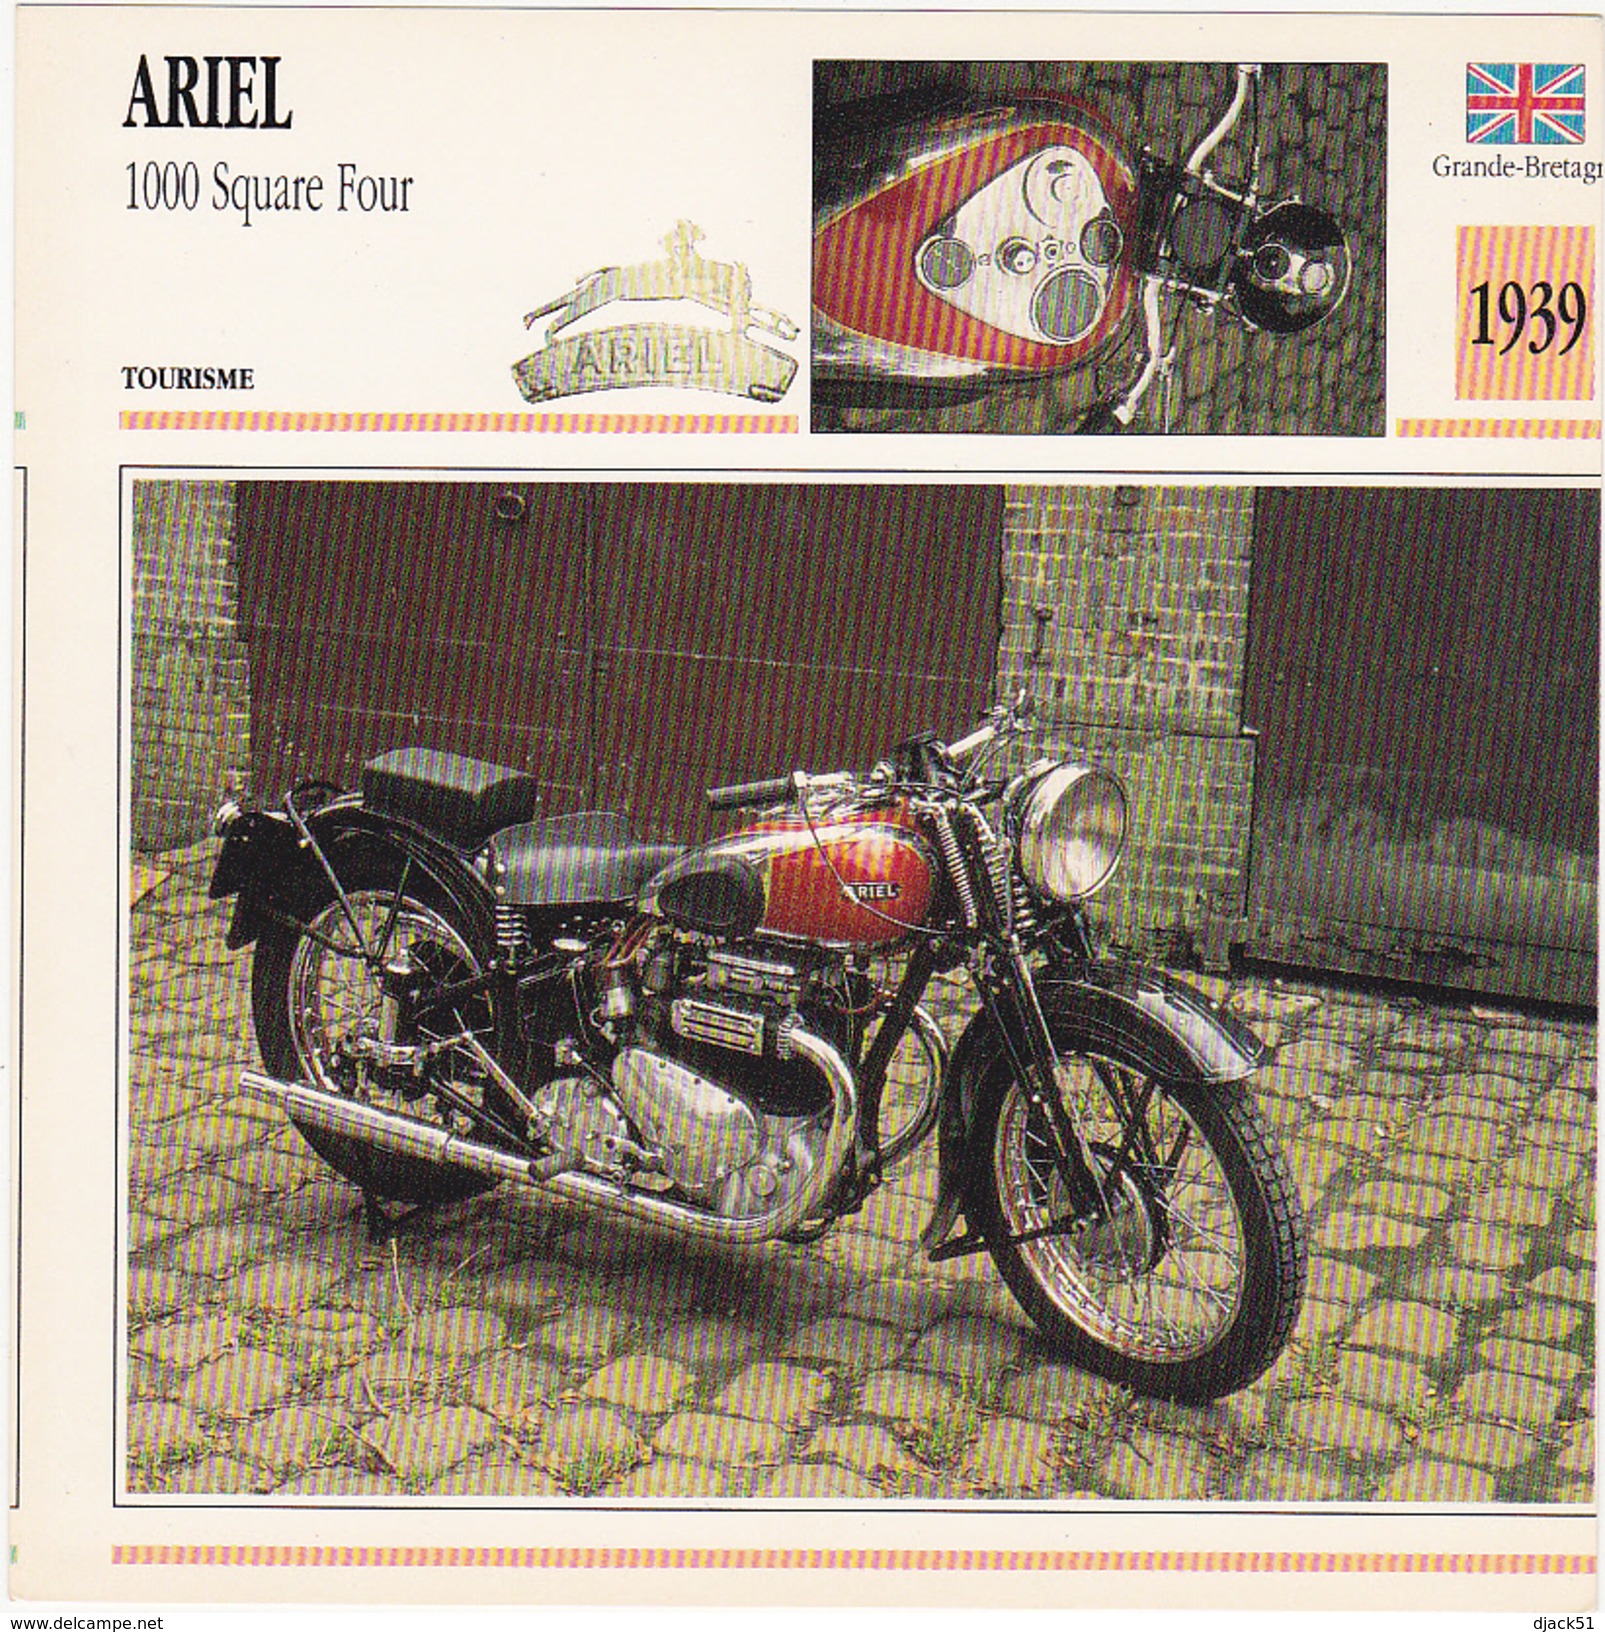 Fiche : MOTO / GRANDE BRETAGNE / ARIEL 1000 Square Four / 1939 - Motos